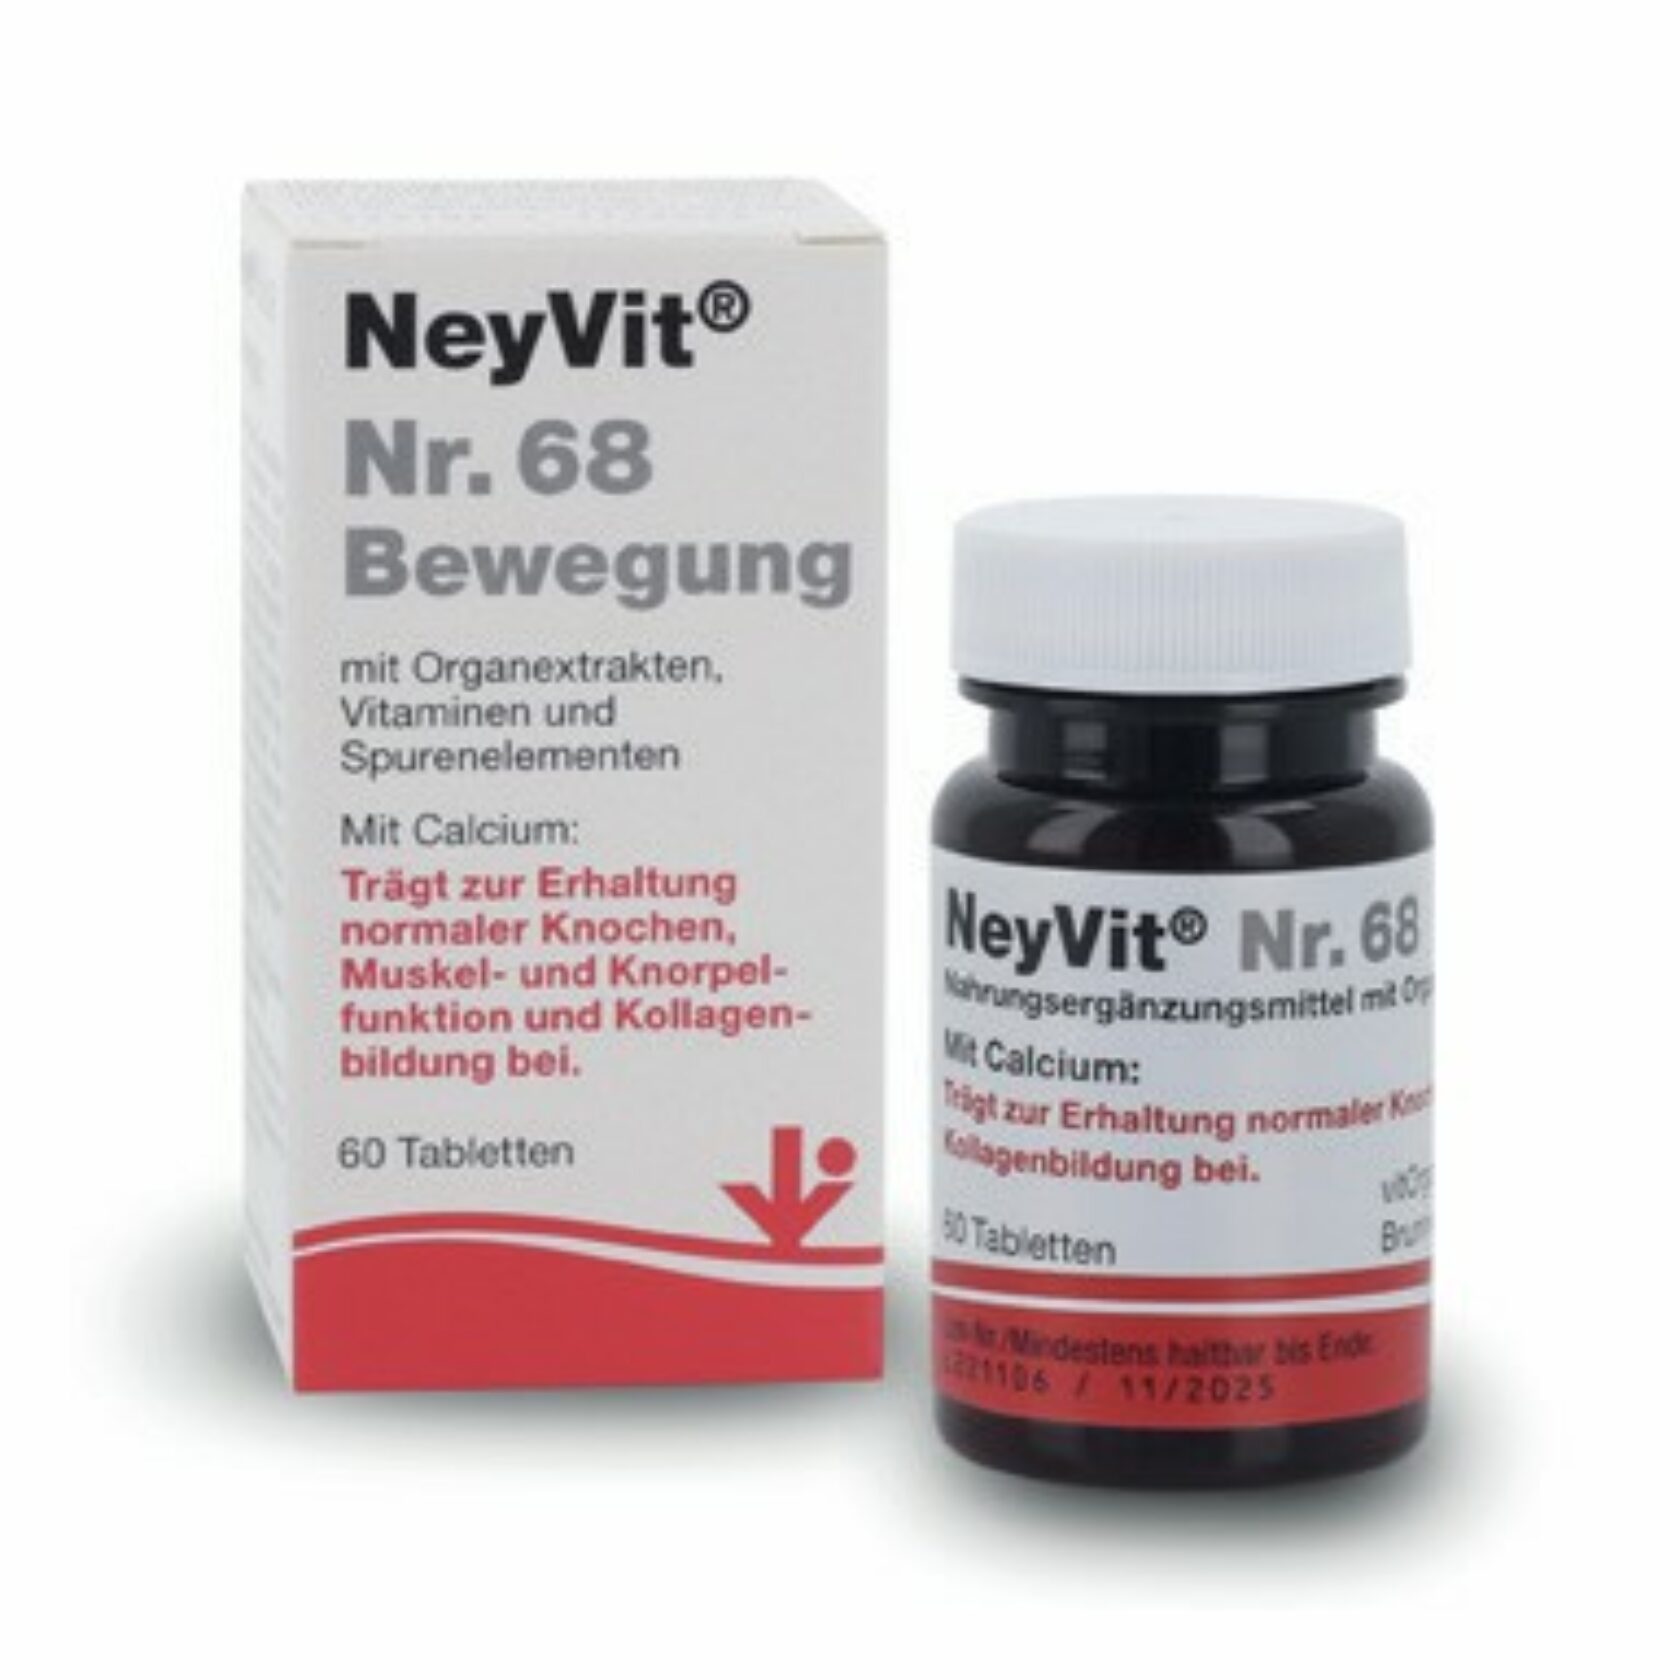 Produktpackung von NeyVit Nr. 68 Bewegung